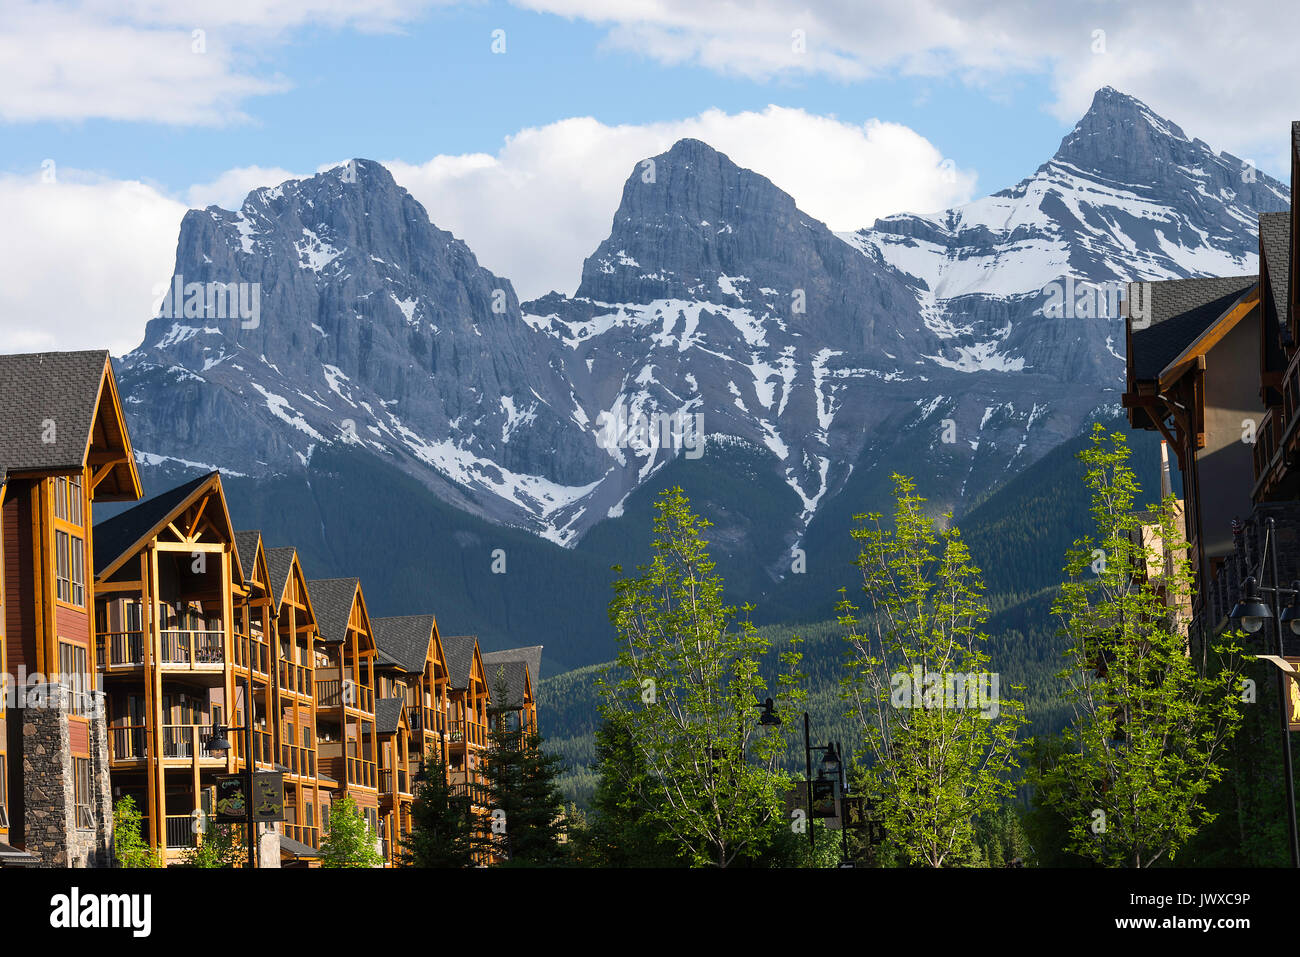 Apartment Gebäude in Canmore durch die Rocky Mountains im Banff National Park in Alberta, Kanada übersehen Stockfoto